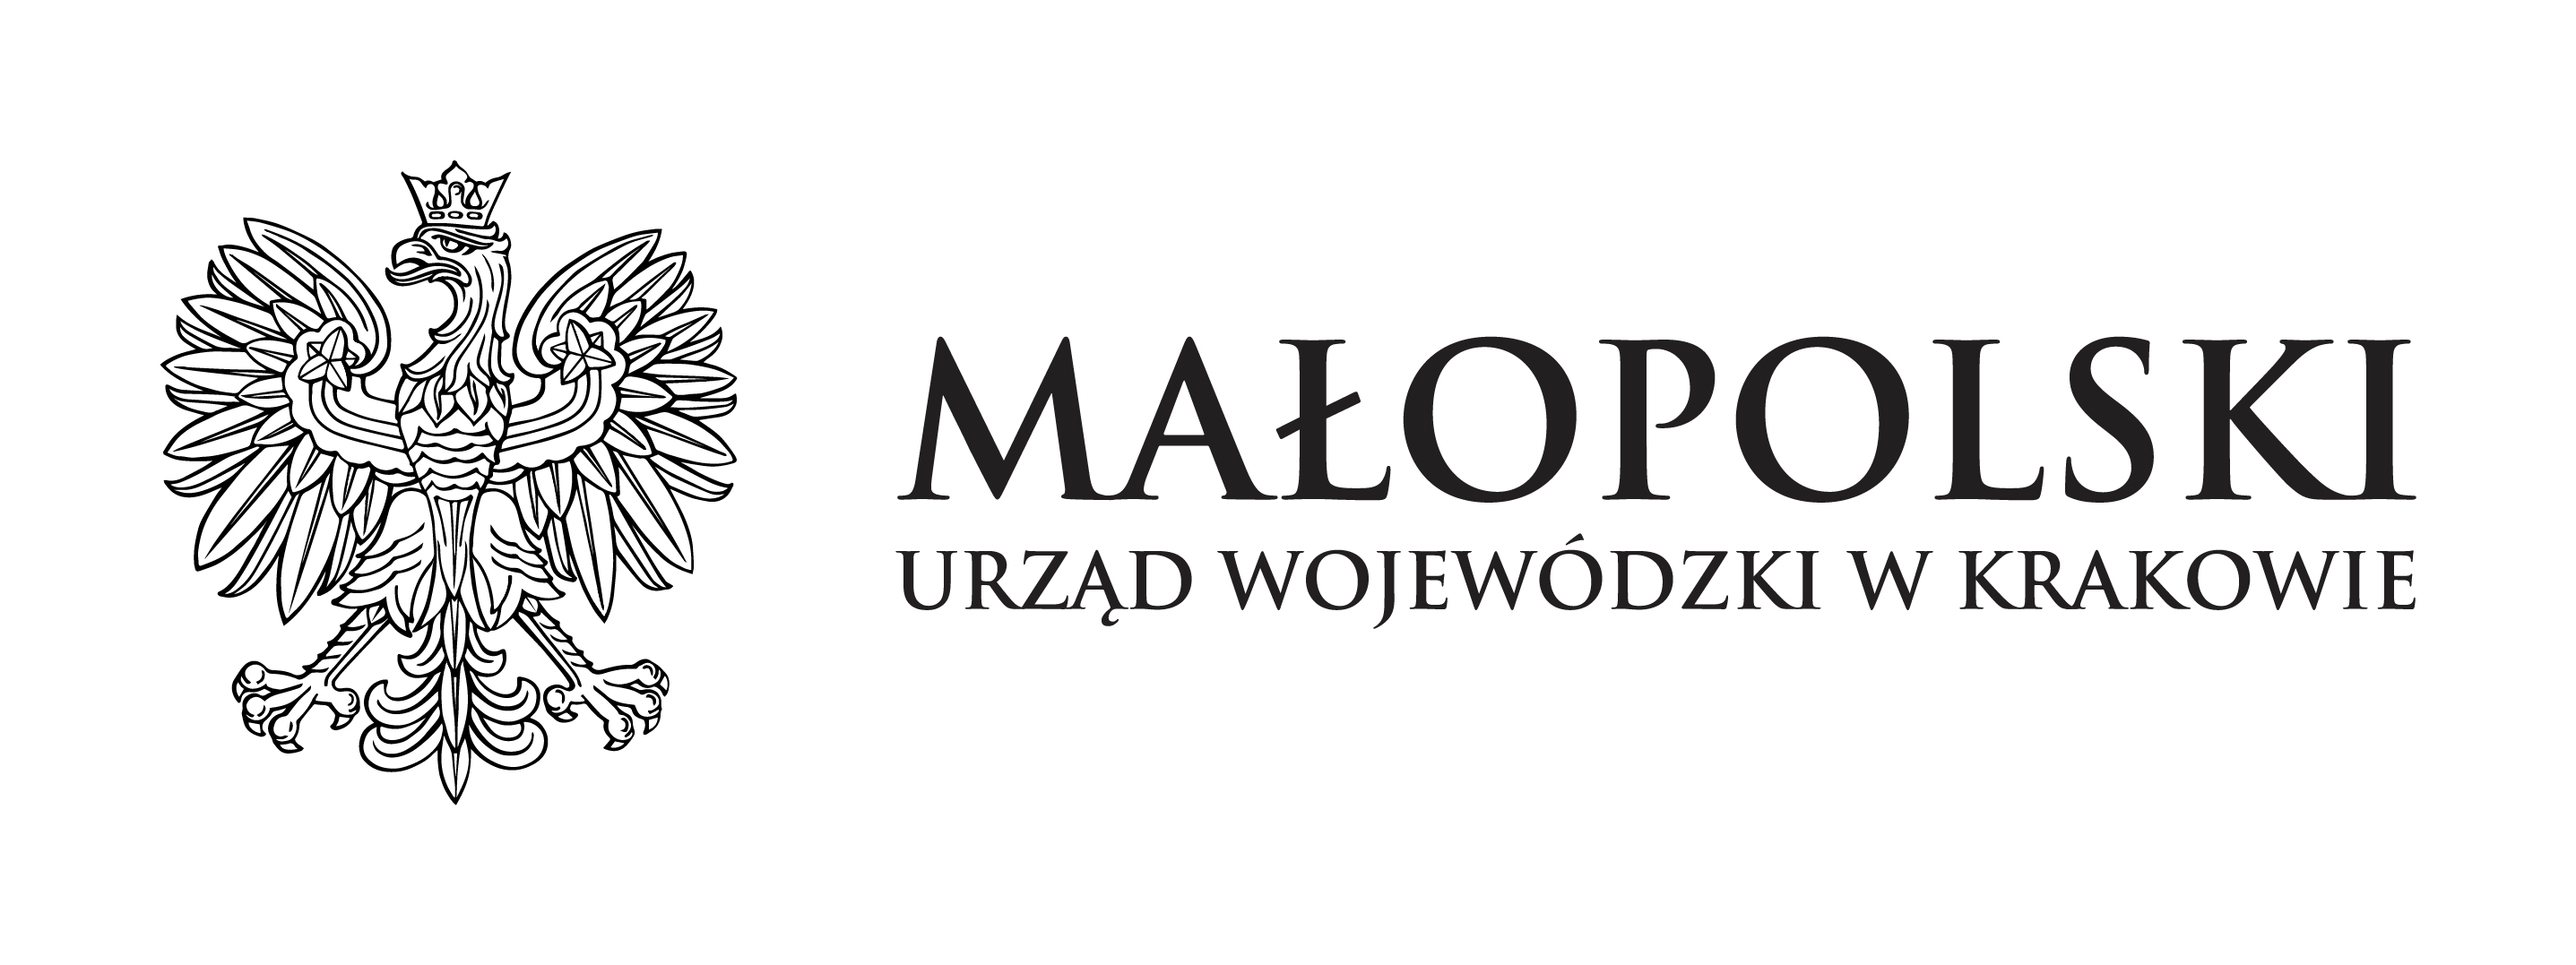 Logotyp Małopolskiego Urzędu Wojewódzkiego w Krakowie